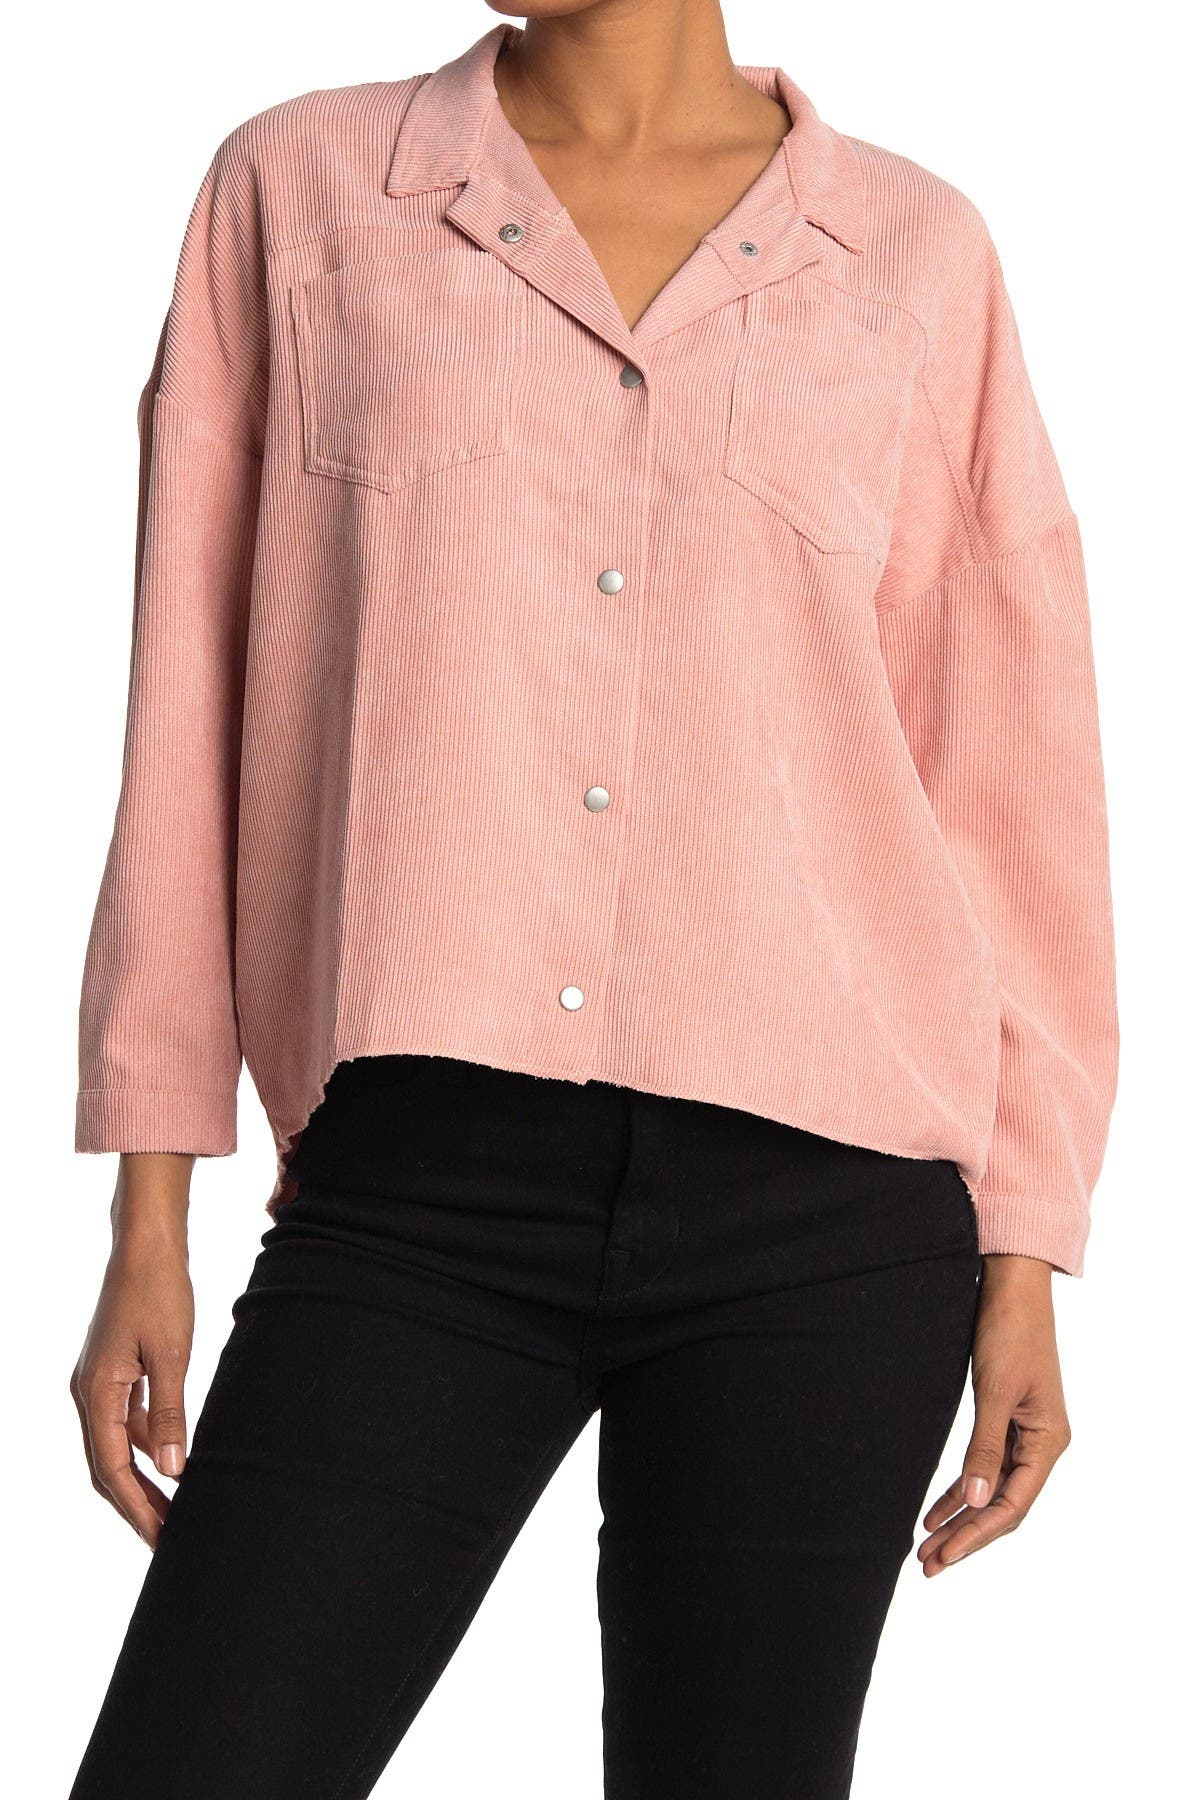 Abound Cord Shirt Jacket In Medium Pink